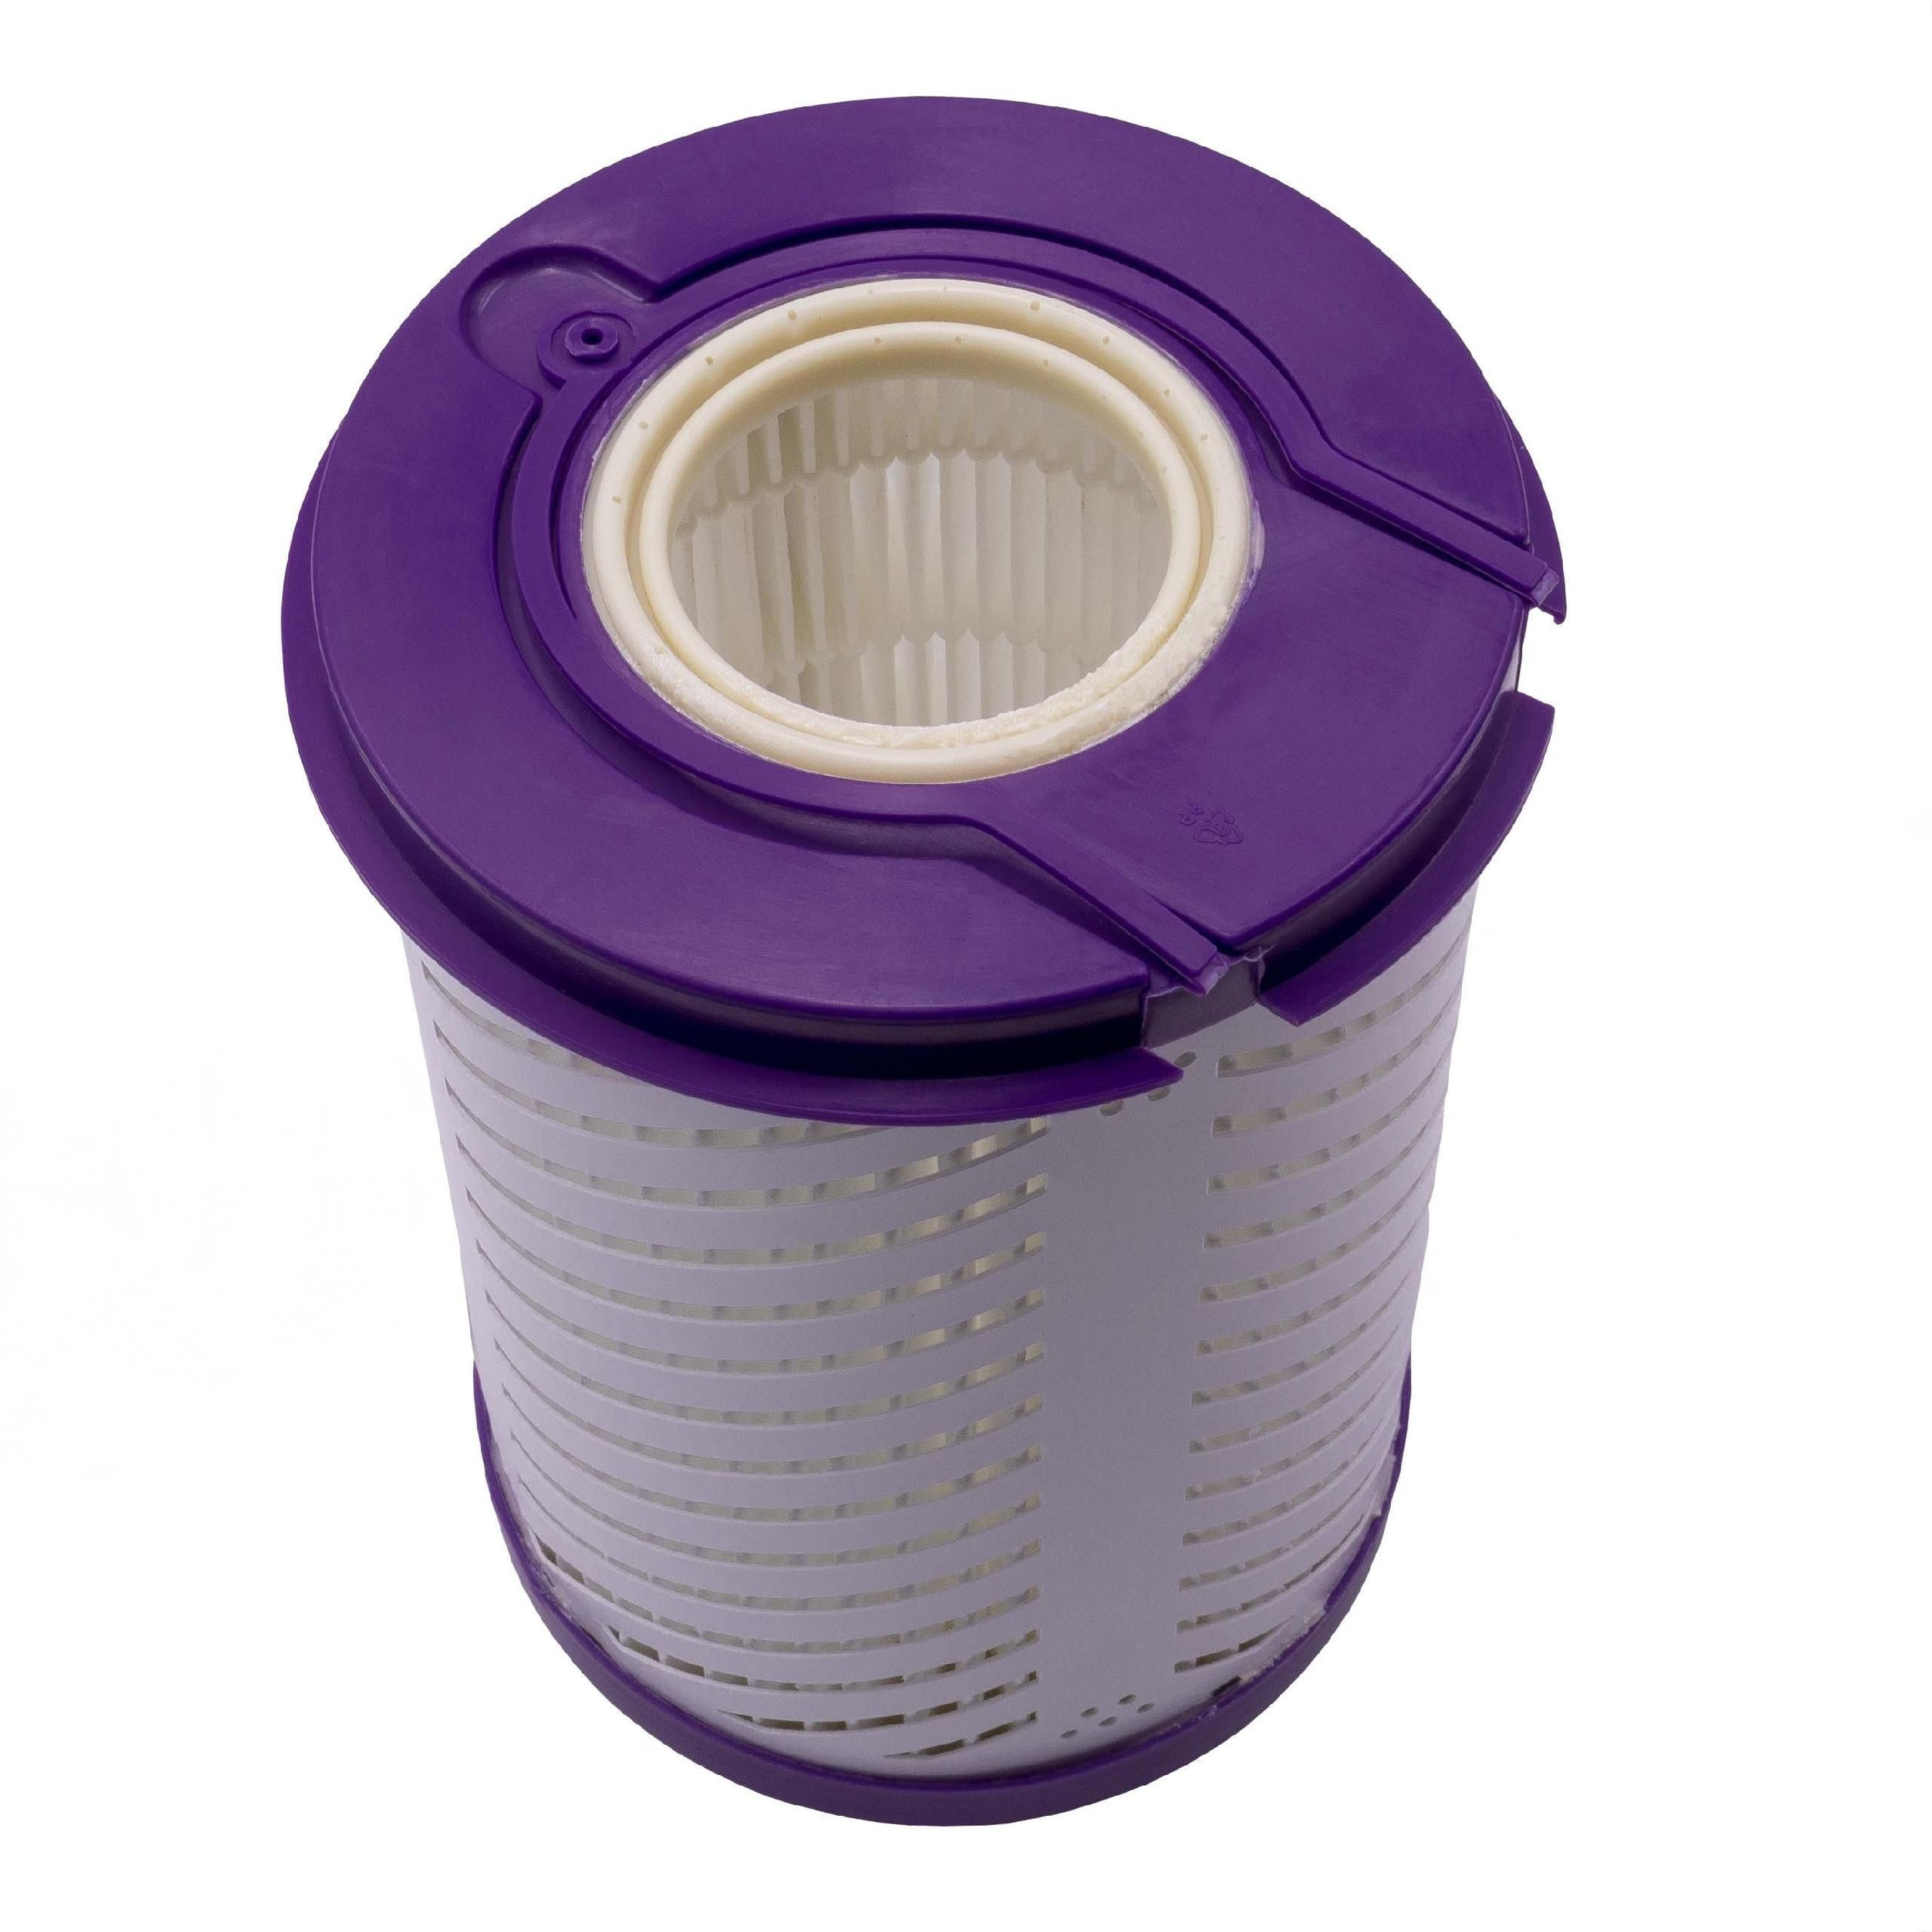 Staubsaugerfilter für Staubsauger wie Dyson 900148-01 , HEPA Nachmotor Filter, Kunststoff / Mikrovlies